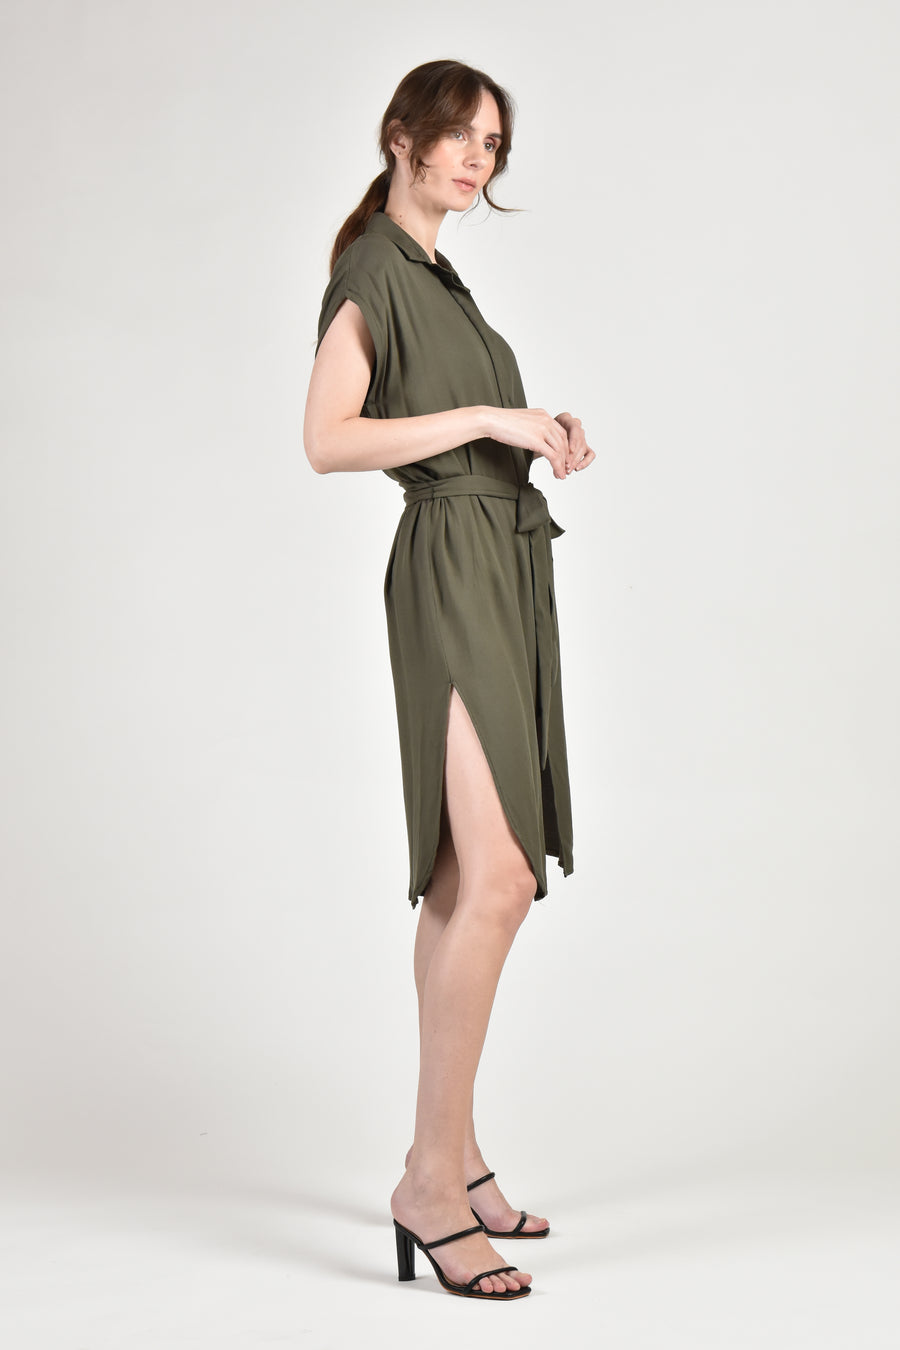 SADIE Button Down Dress (Army Green)